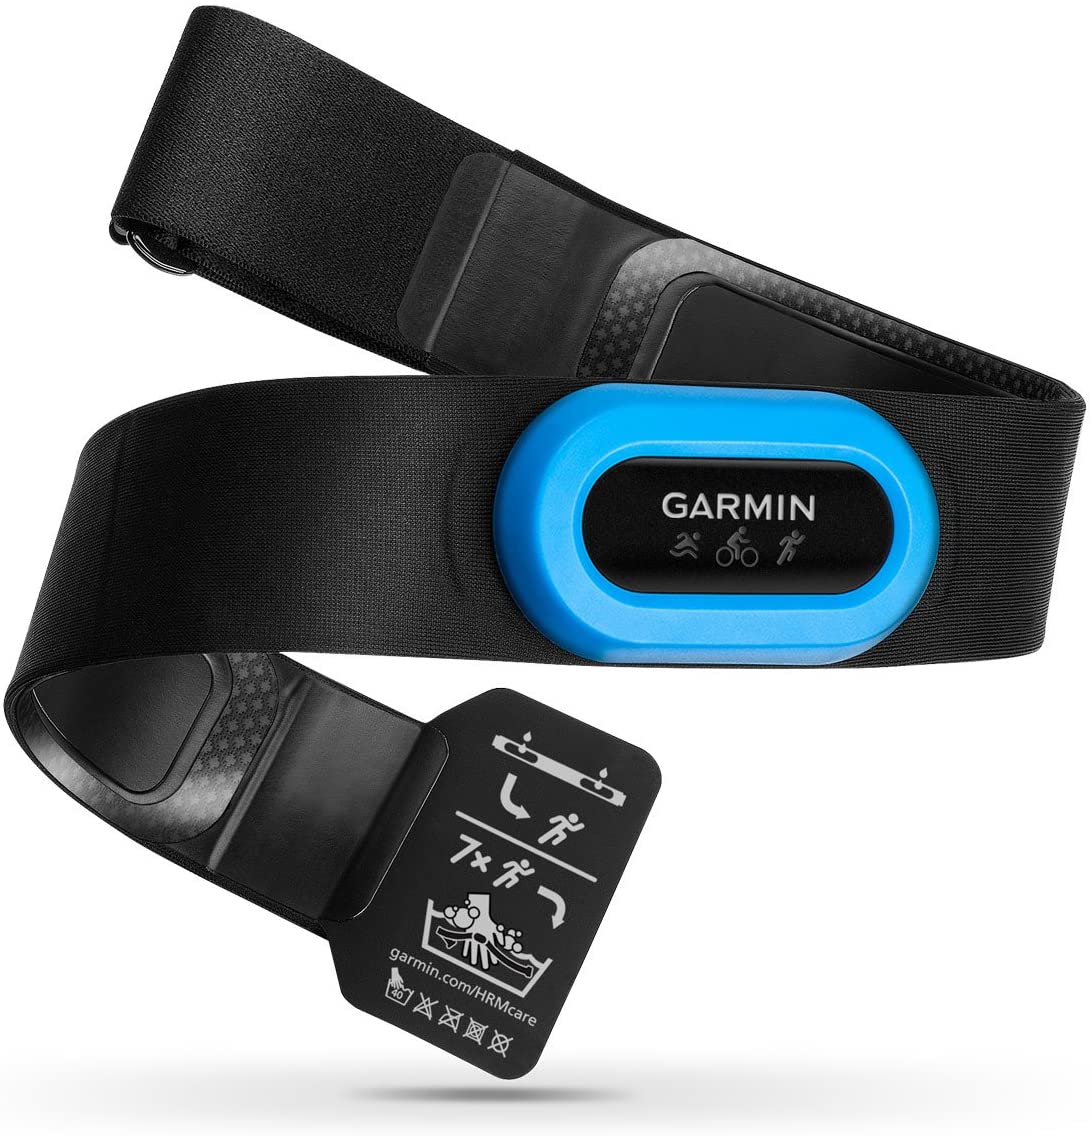 Monitor de frecuencia cardíaca – Garmin HRM-Tri